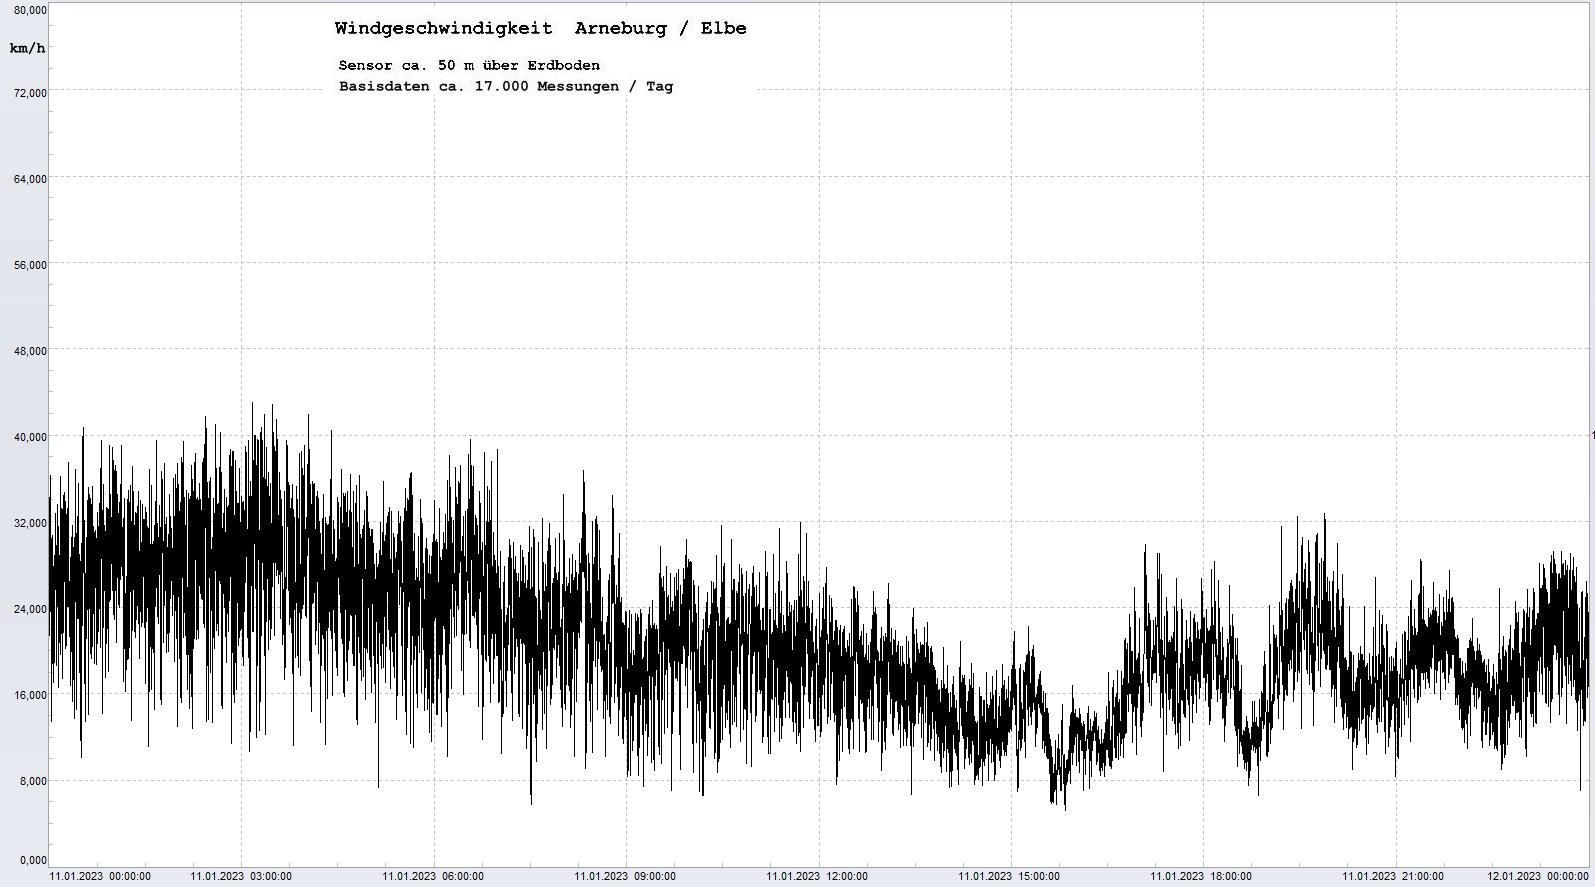 Arneburg Tages-Diagramm Winddaten, 11.01.2023
  Diagramm, Sensor auf Gebäude, ca. 50 m über Erdboden, Basis: 5s-Aufzeichnung